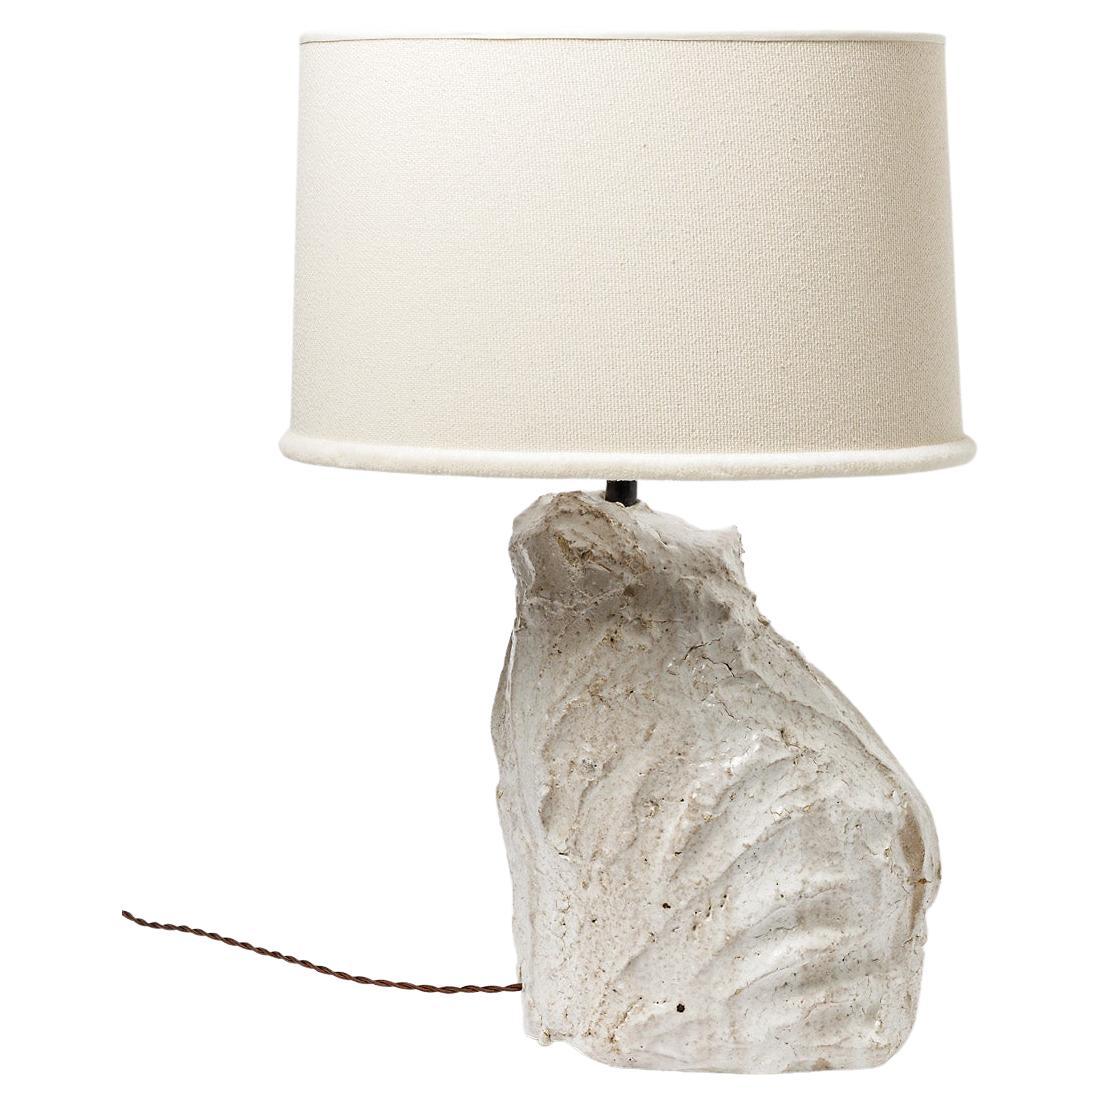 Tischlampe aus Keramik mit weißer Glasur von Hervé Rousseau, 2022 / REF 5